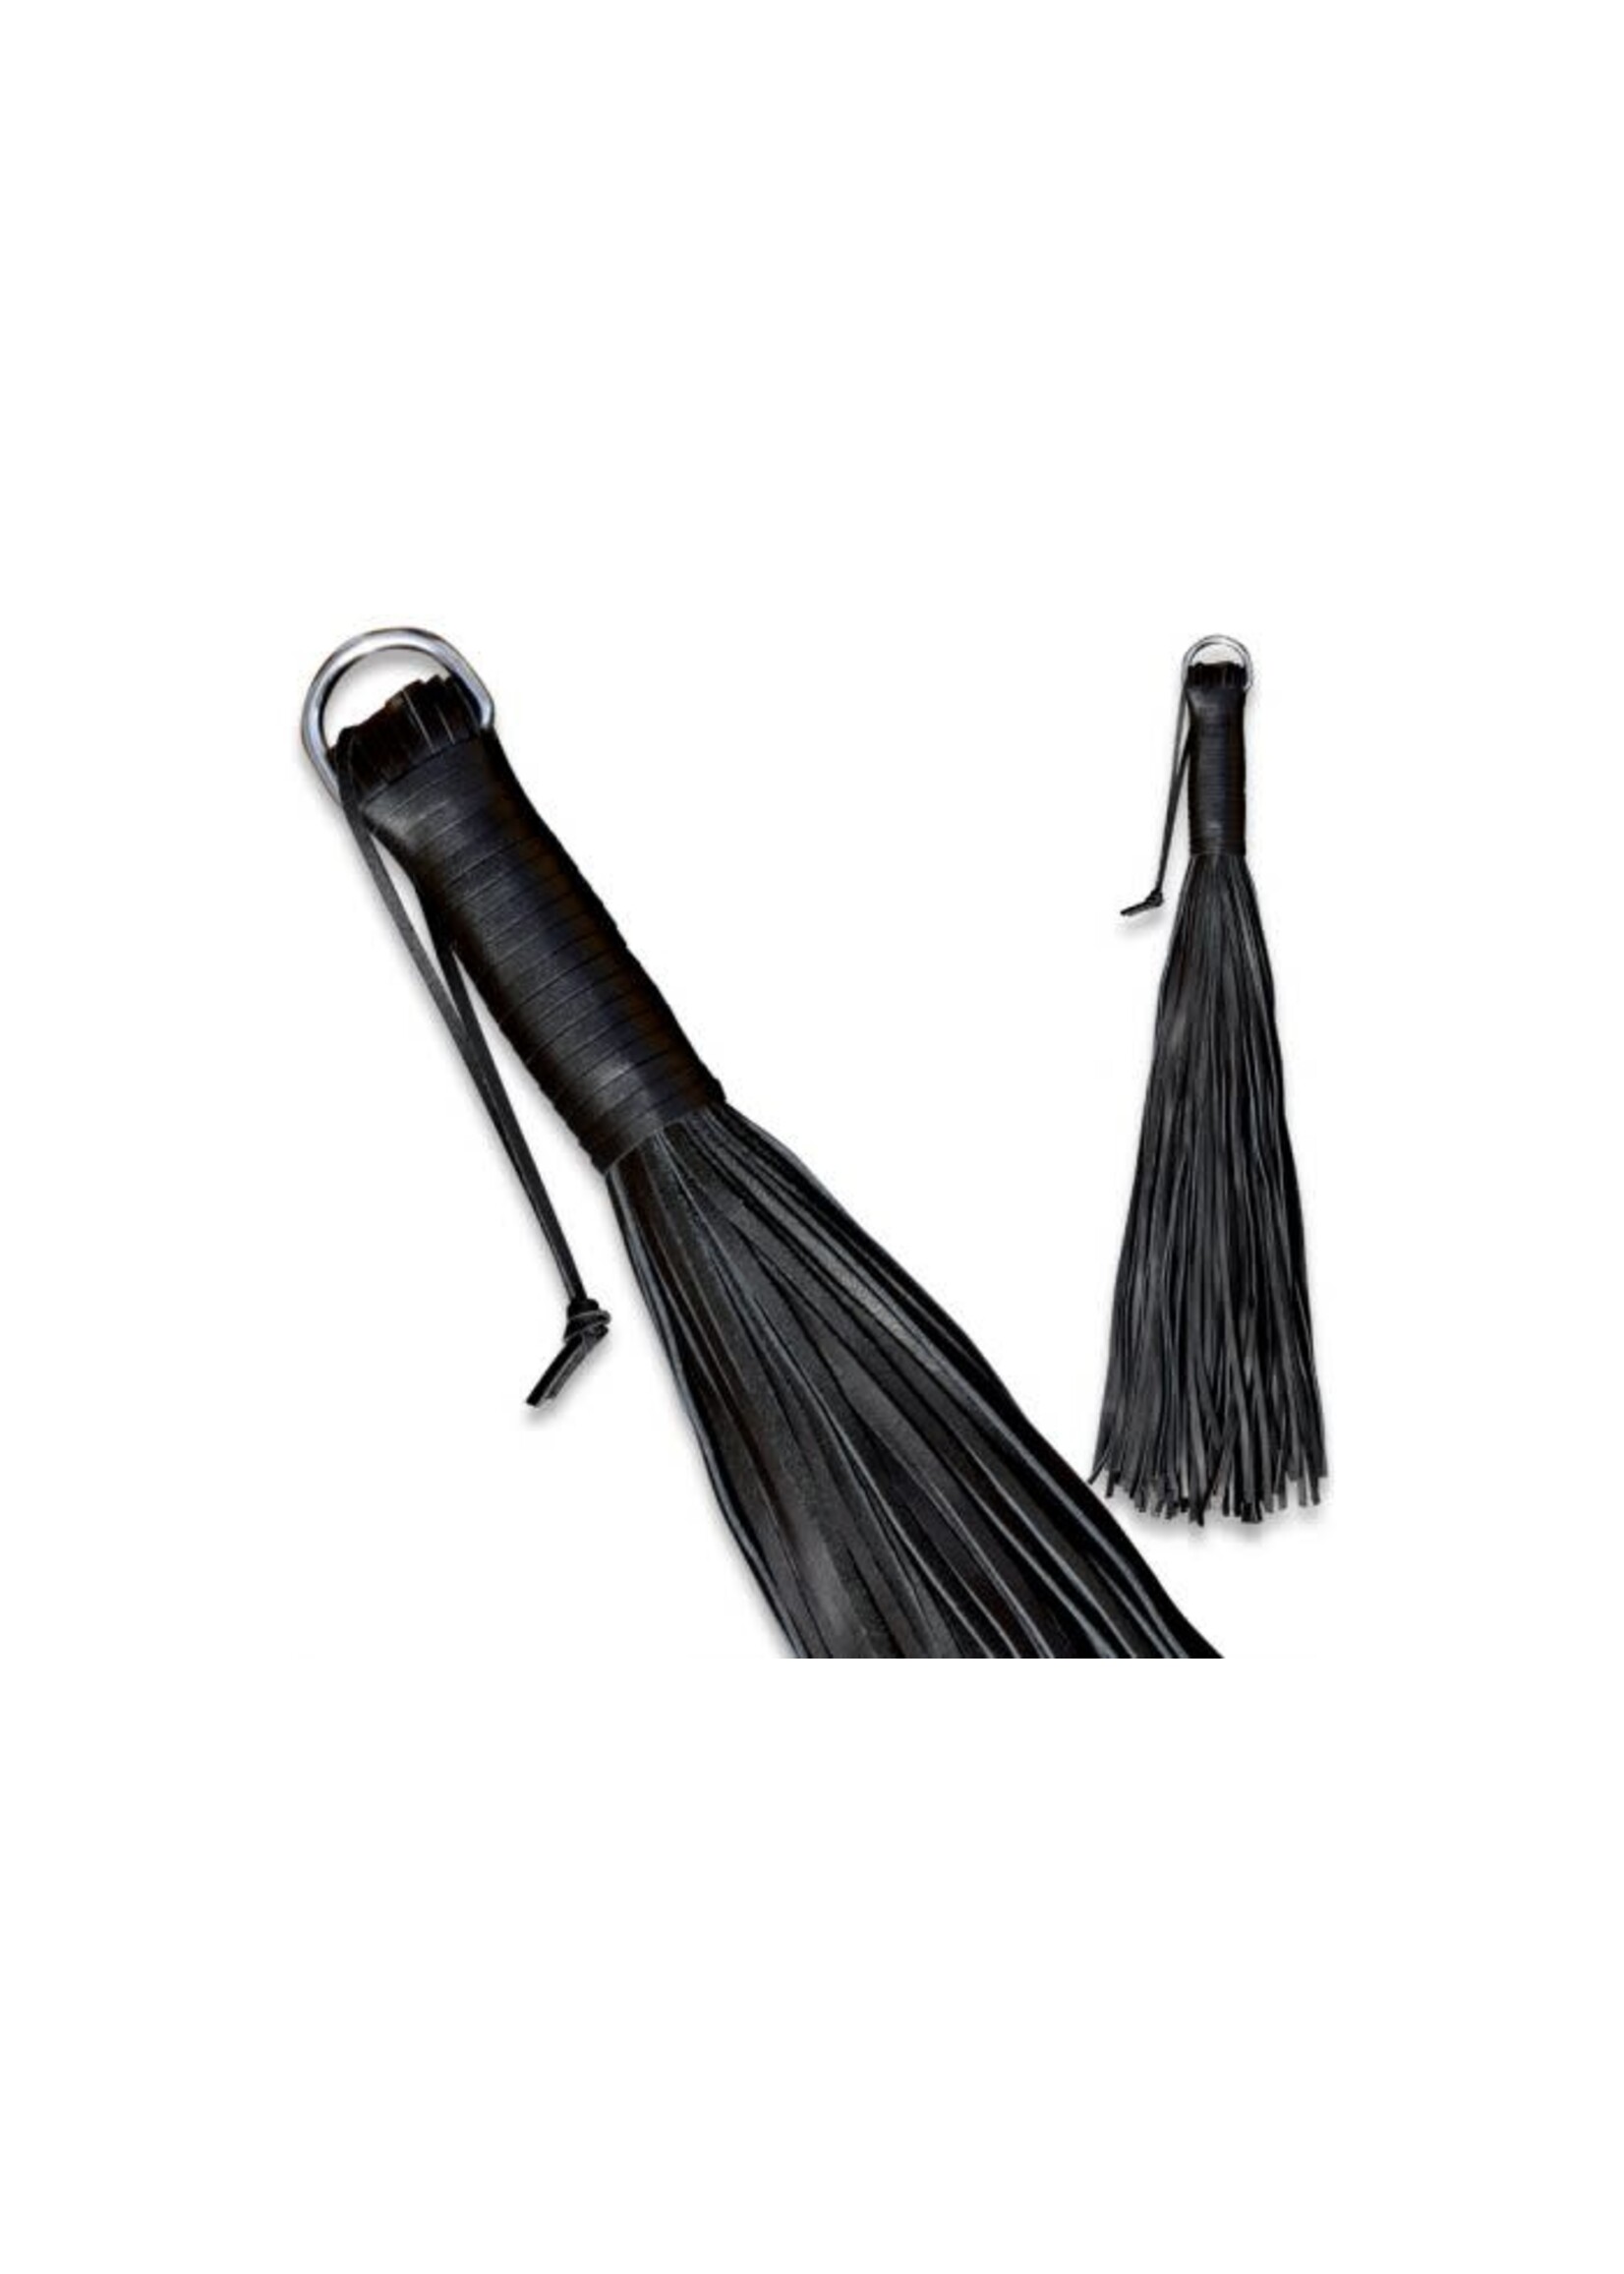 Kiotos Leather whip - 100 strings